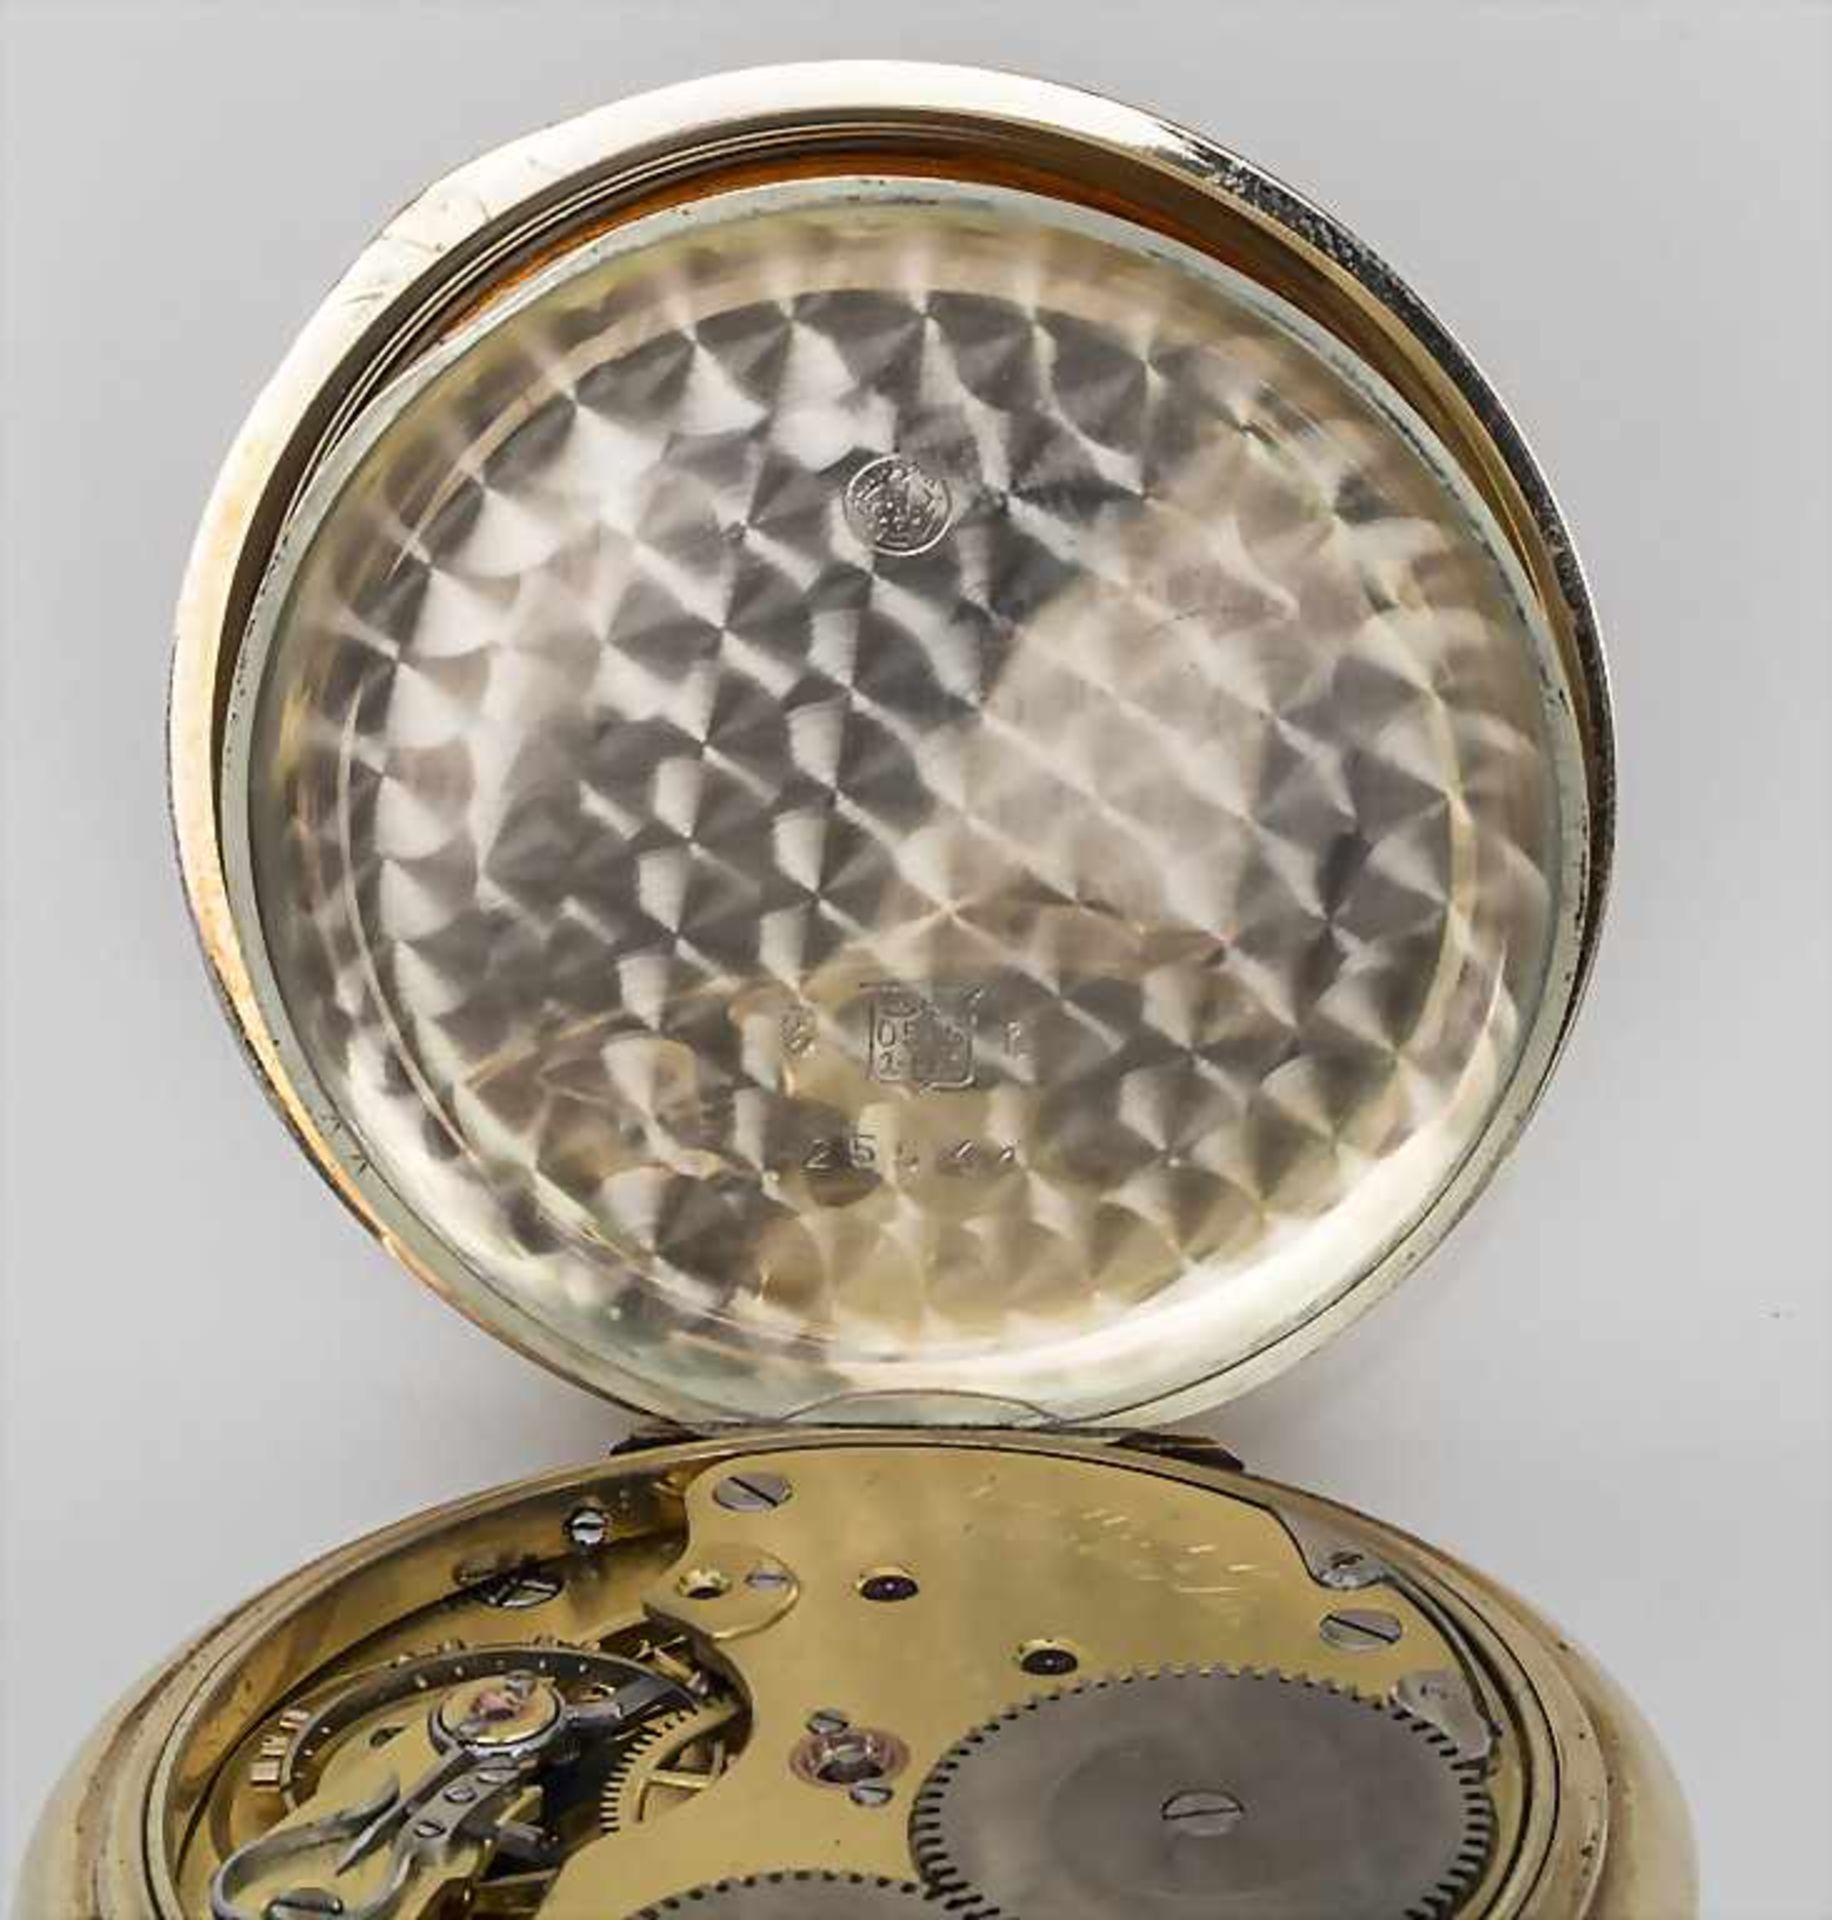 Offene Herrentaschenuhr / A pocket watch, J. Assmann, Glashütte in Sachsen, um 1915 - Image 4 of 5